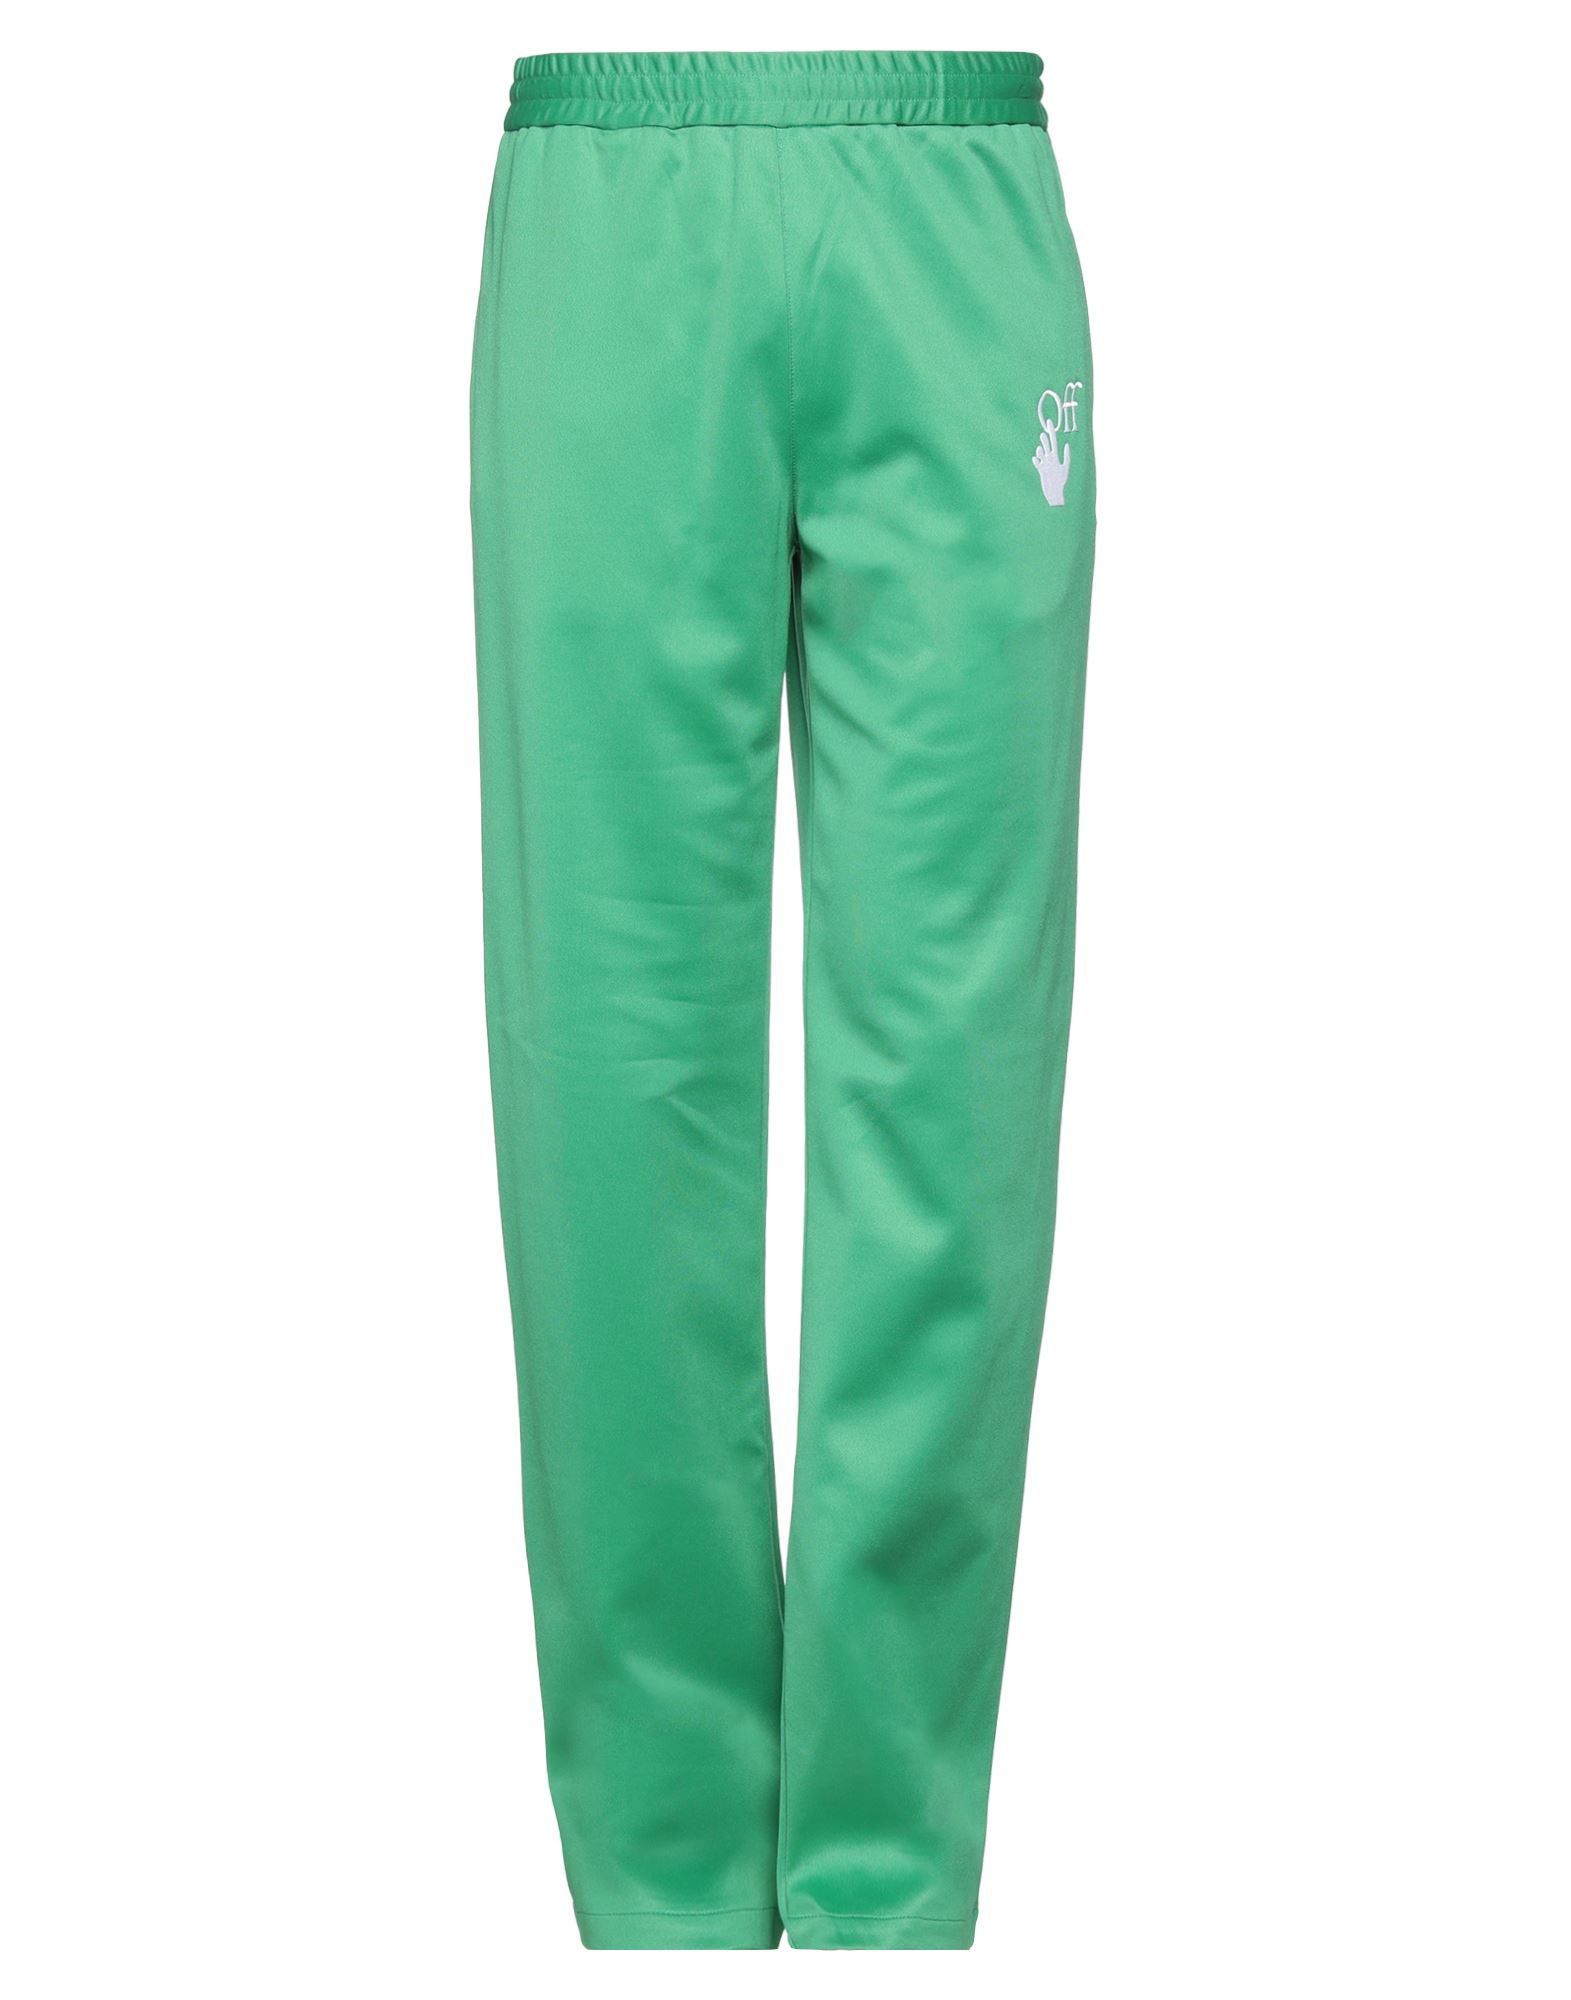 Off-white Man Pants Green Size L Polyamide, Cotton, Elastane